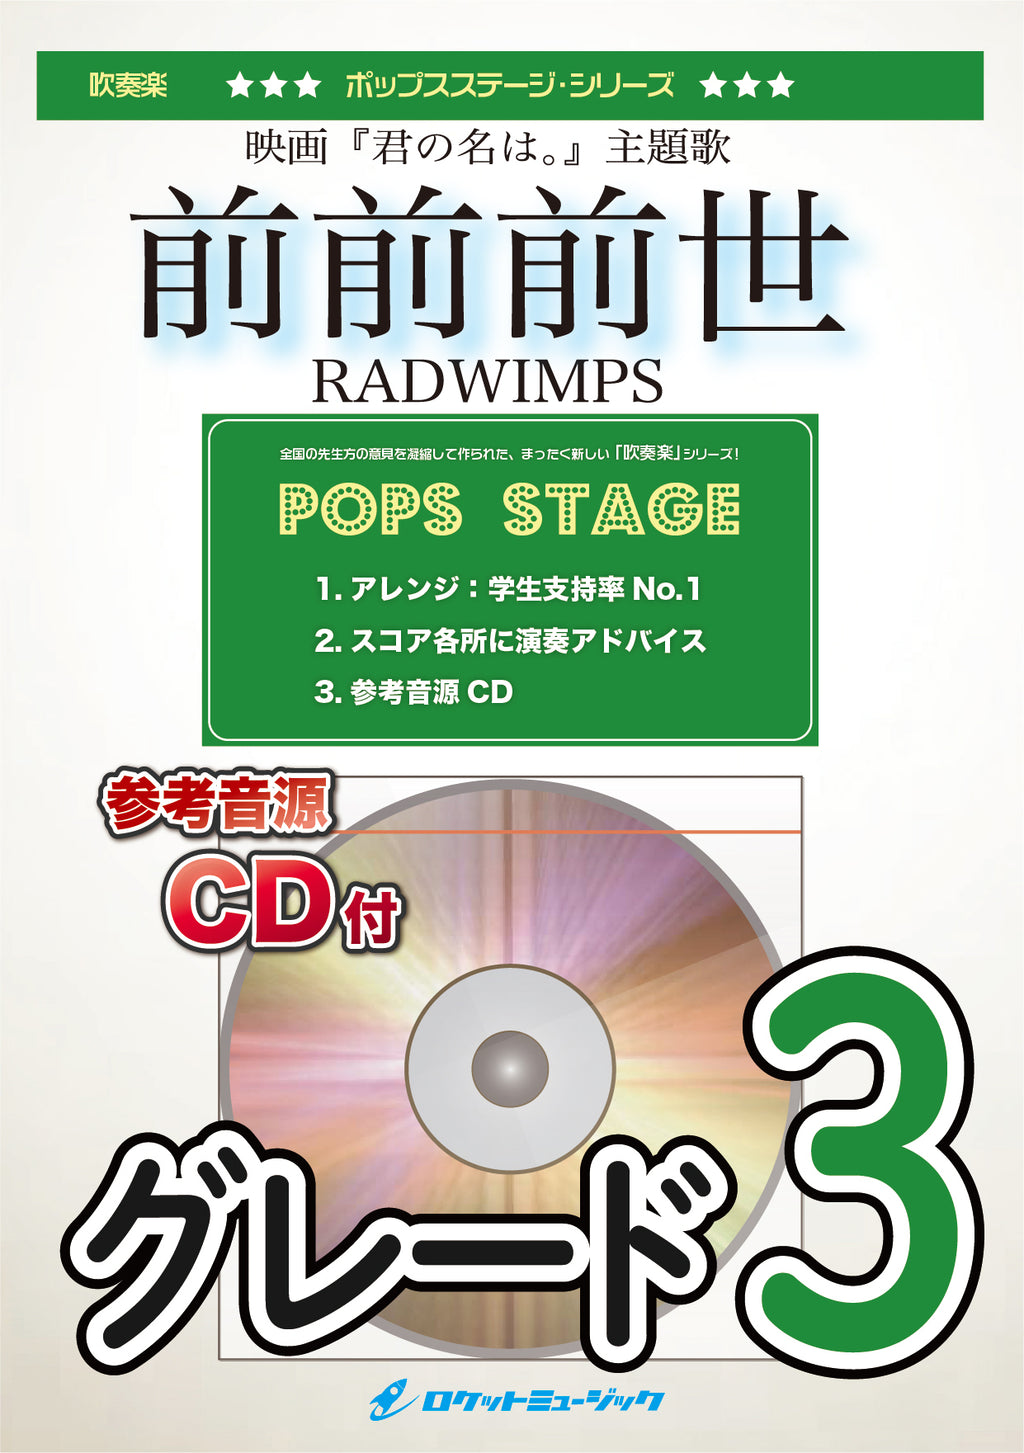 激レア Radwinps デビュー前 自作CD - 邦楽